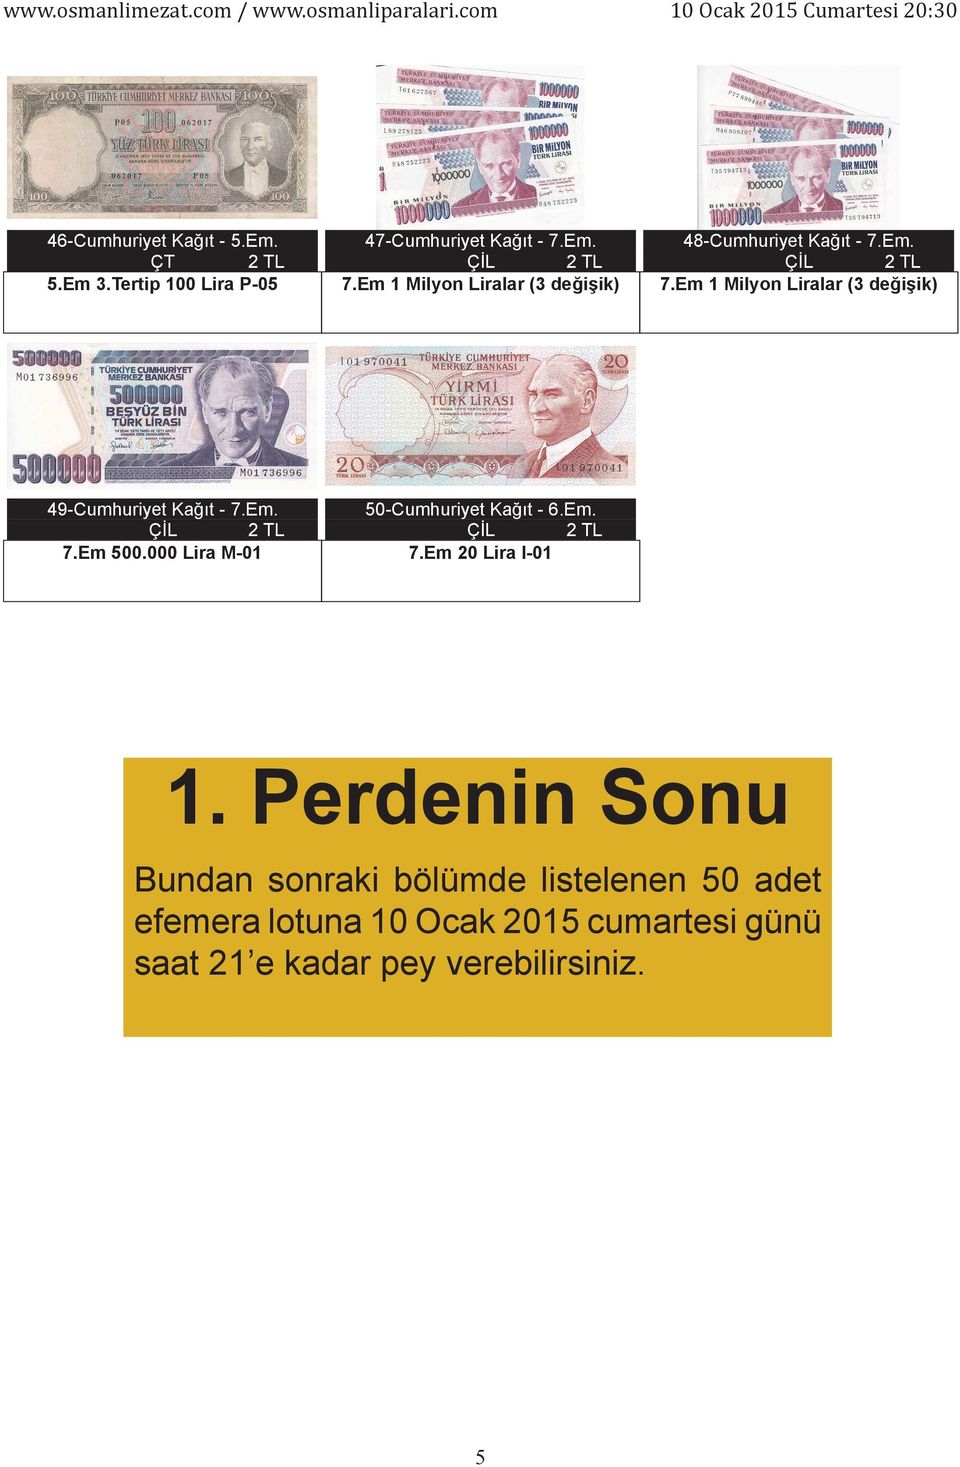 Em. 7.Em 500.000 Lira M-01 50-Cumhuriyet Kağıt - 6.Em. 7.Em 20 Lira I-01 1.